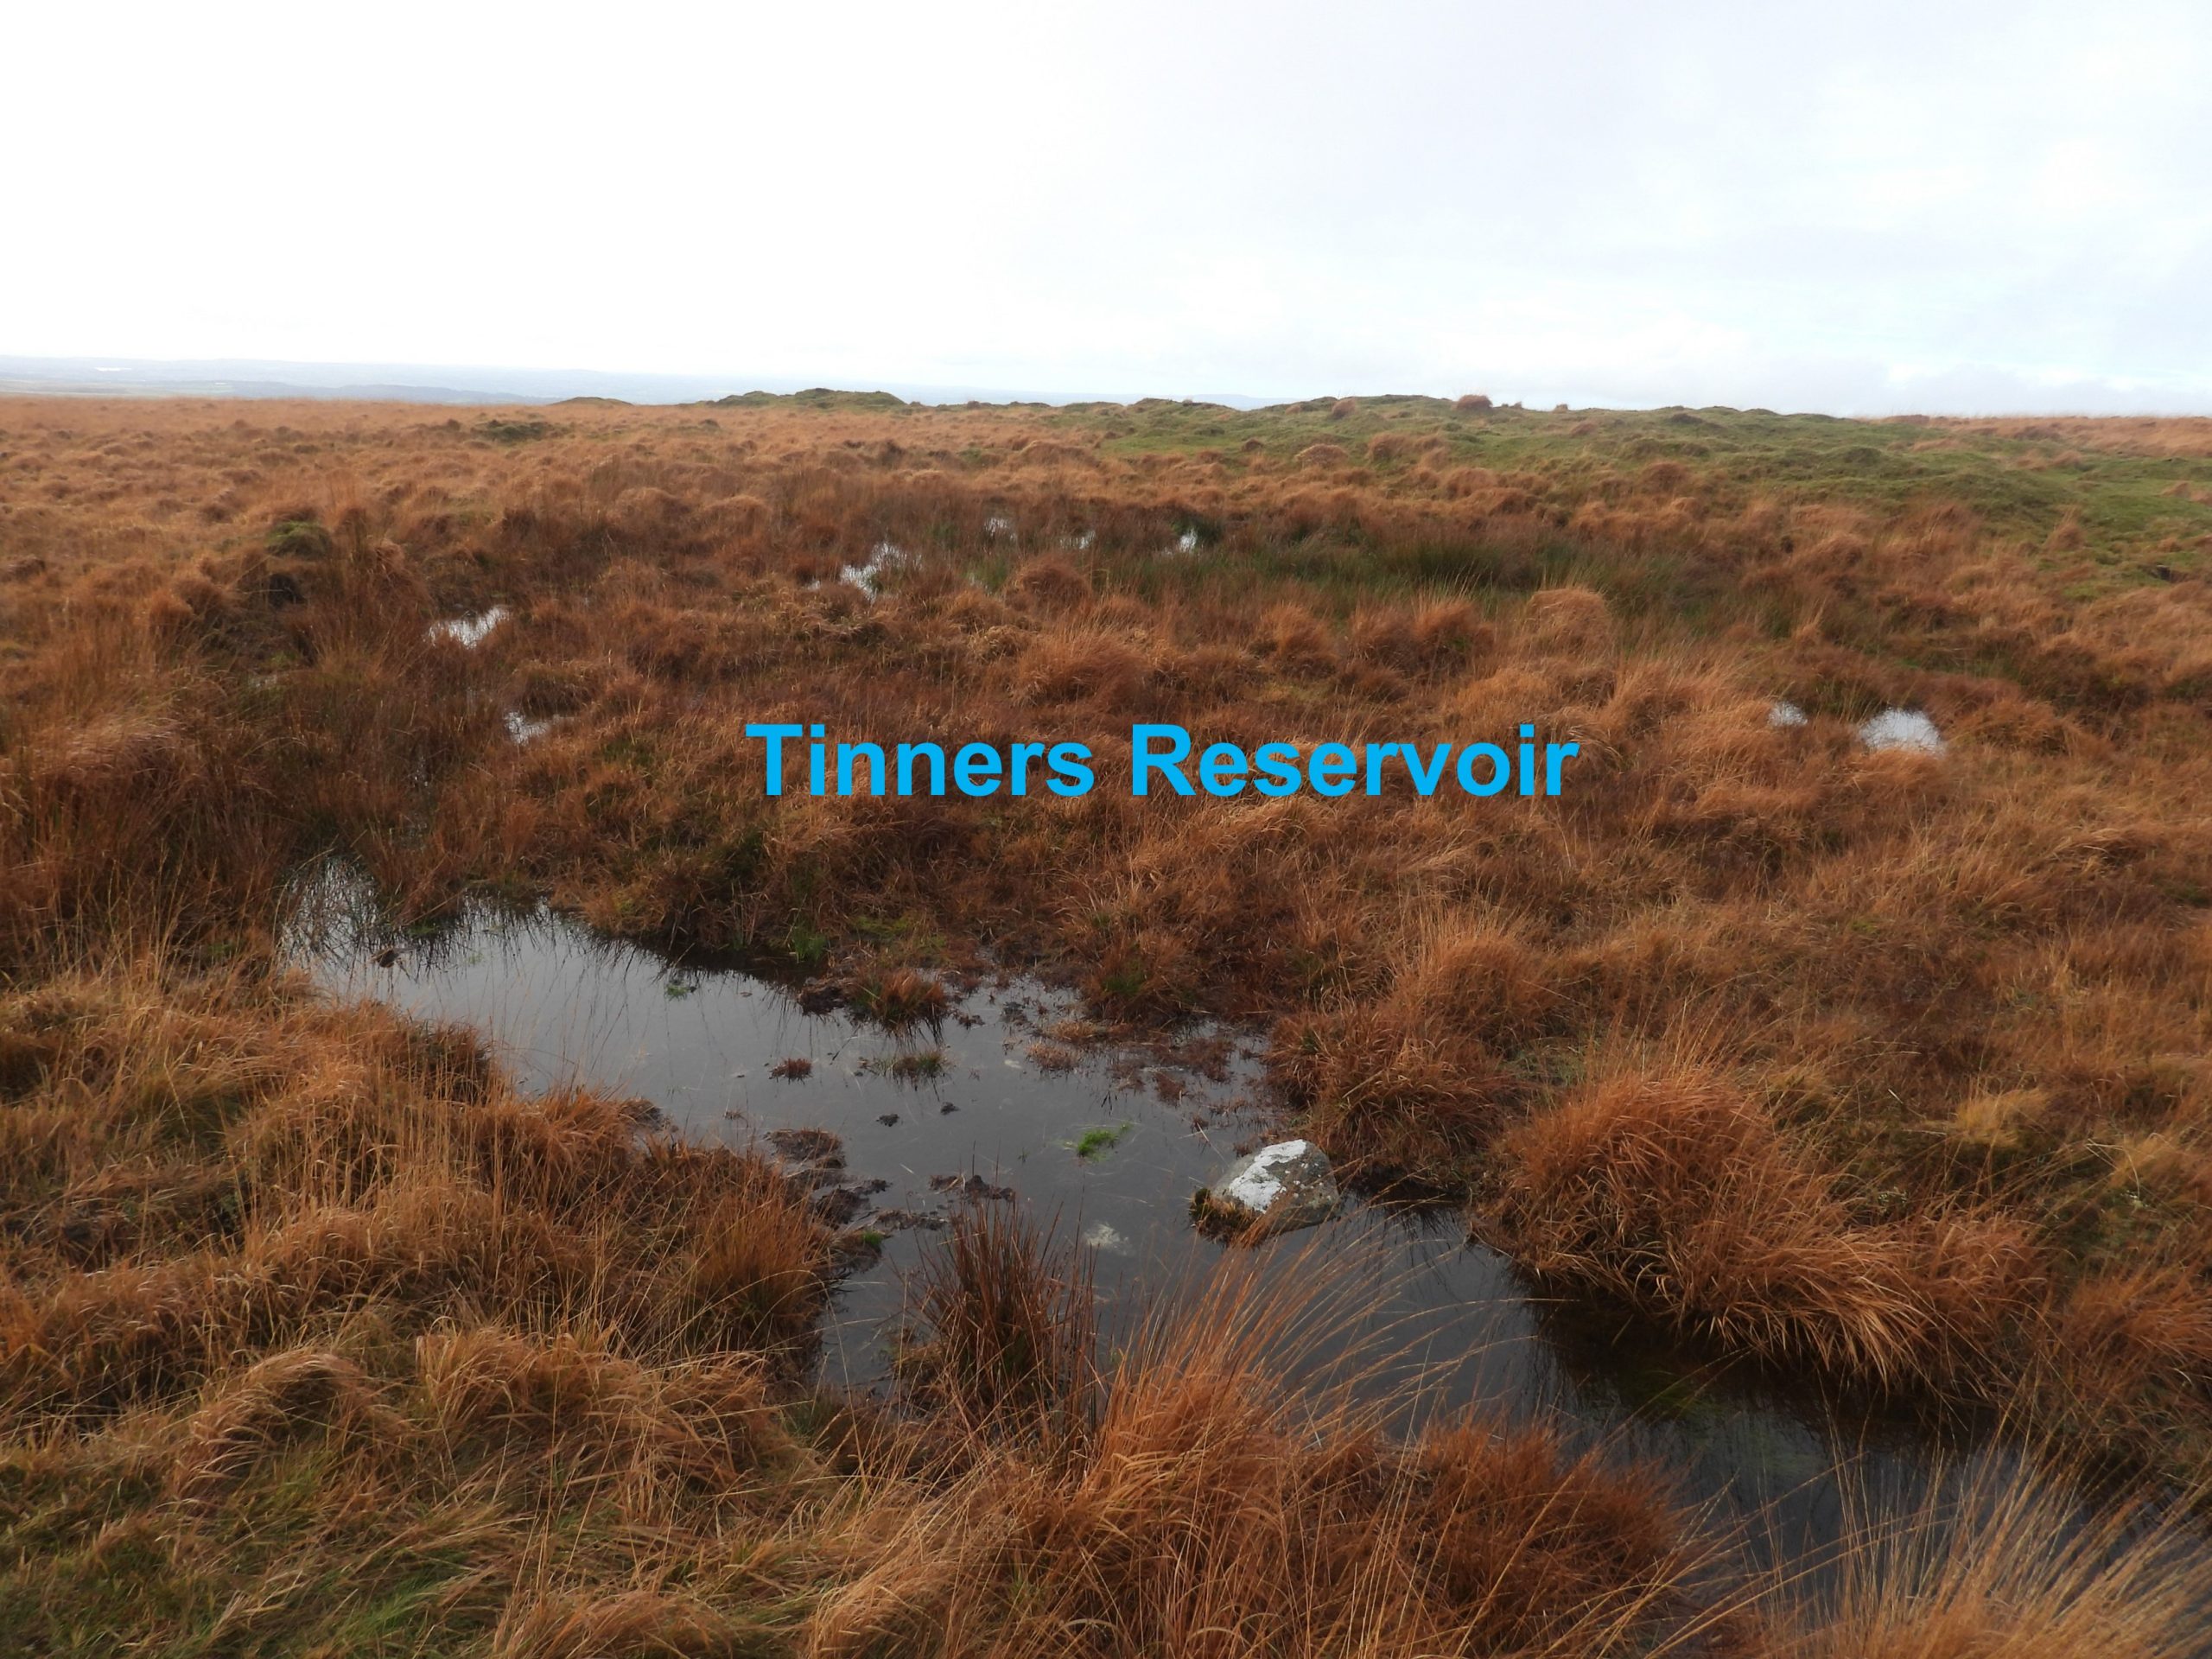 74. Tinners Reservoir a